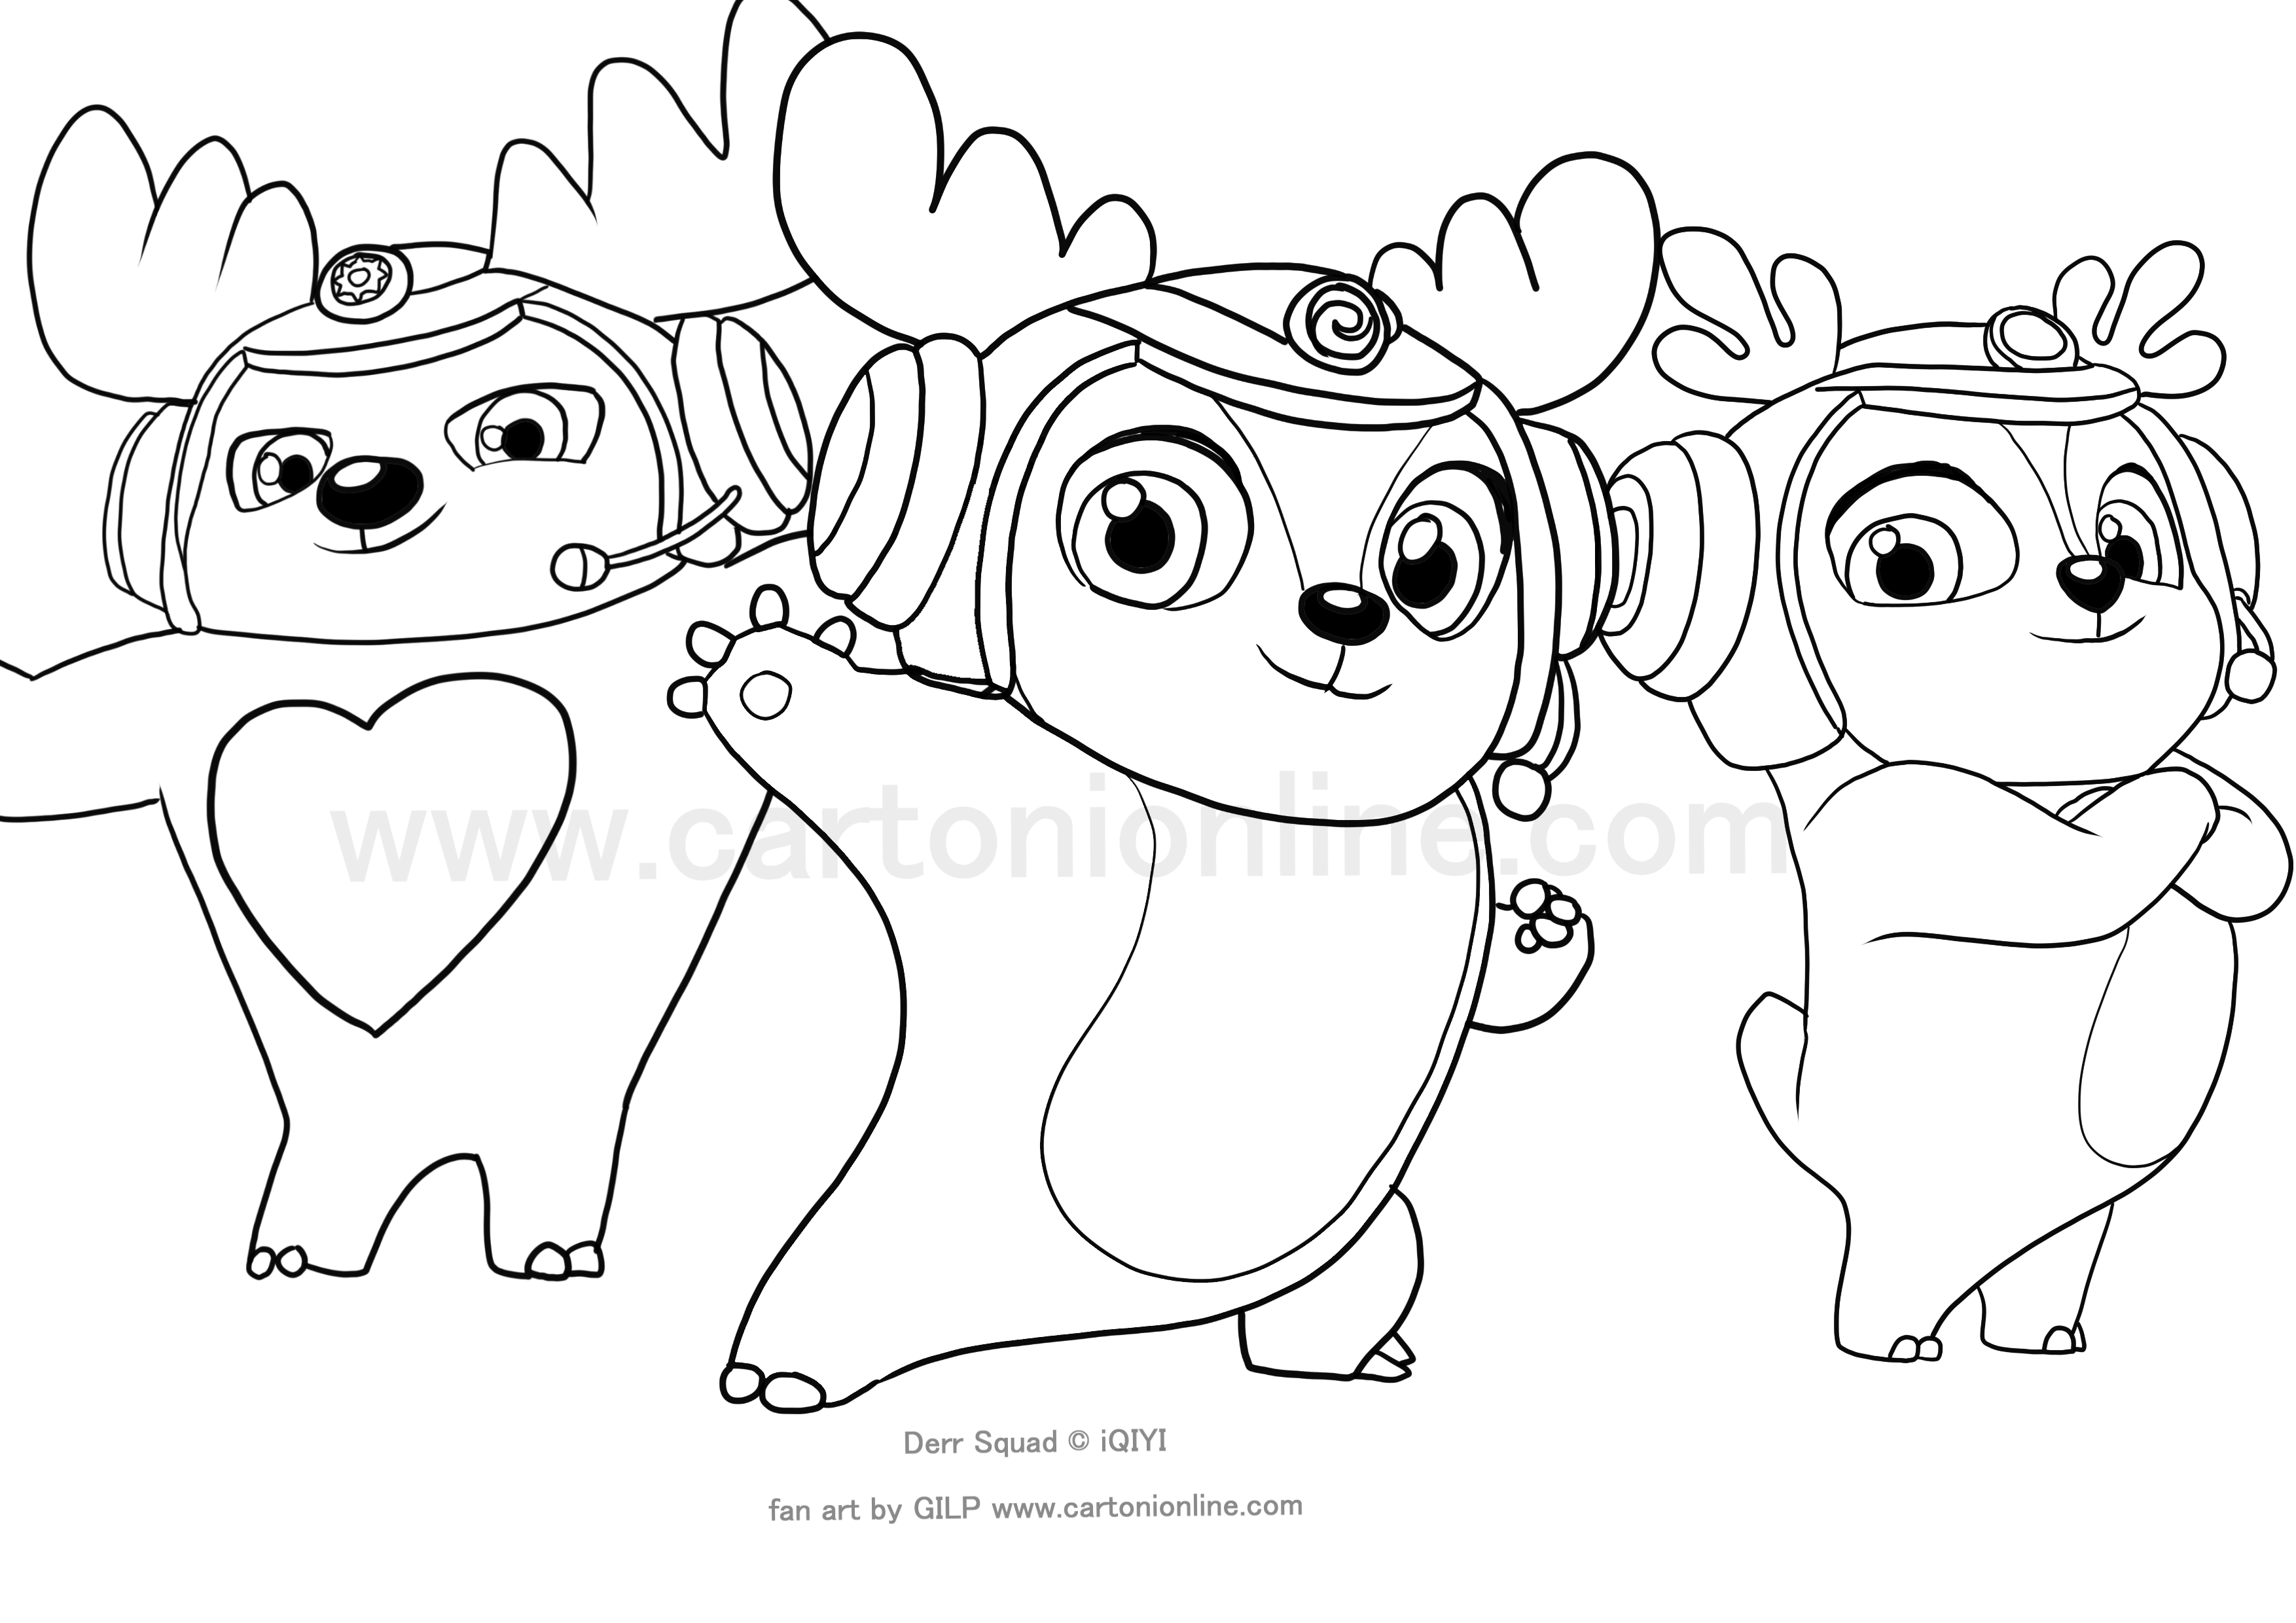 Dibujo de Deer Squad para imprimir y colorear